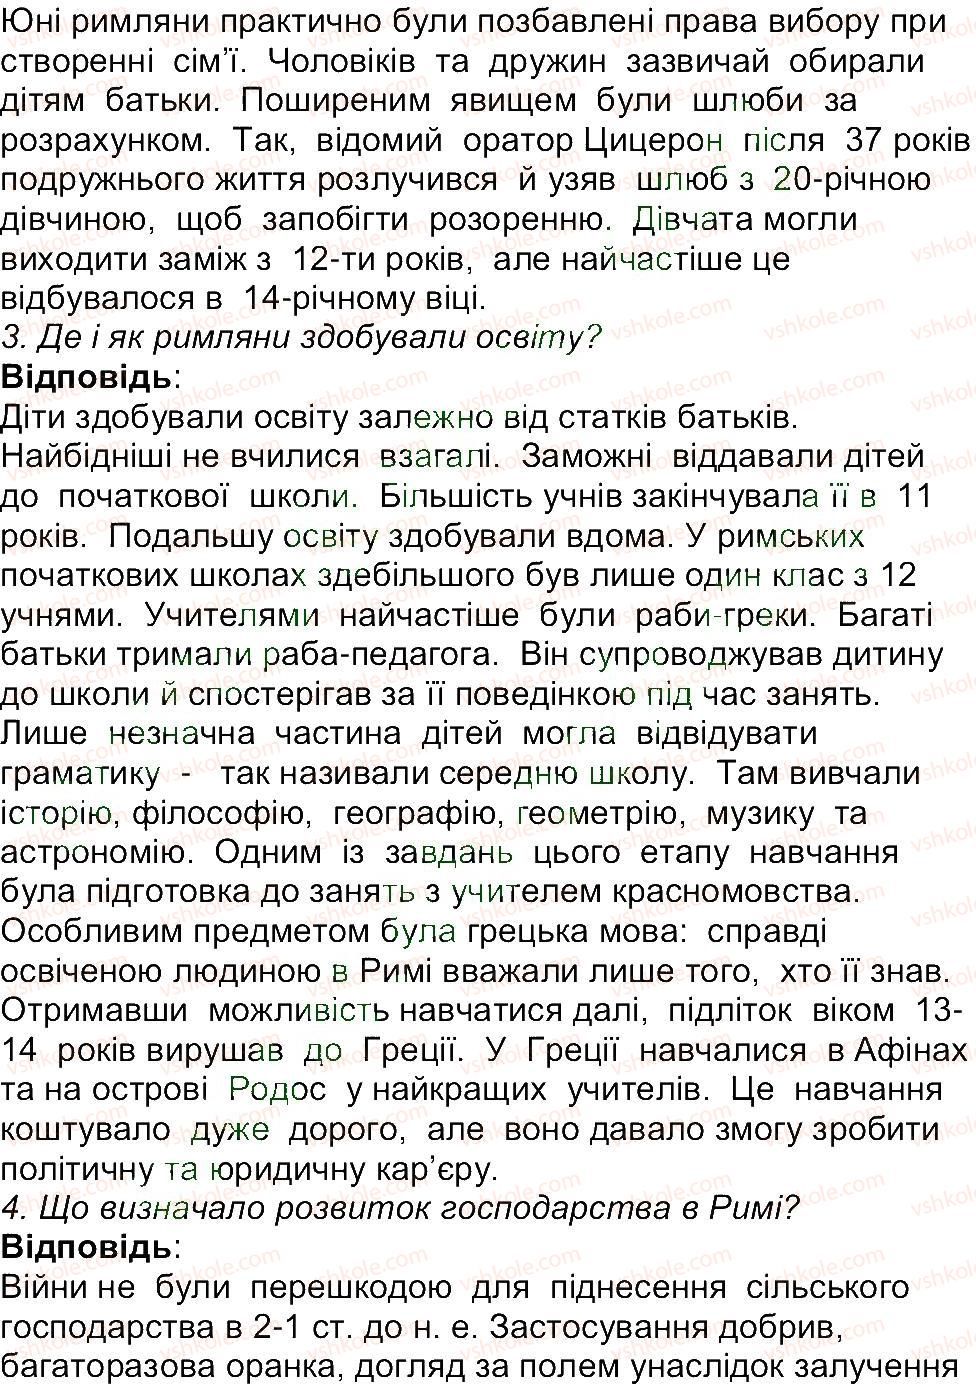 6-istoriya-og-bandrovskij-vs-vlasov-2014--storinki-201-270-223-rnd7816.jpg